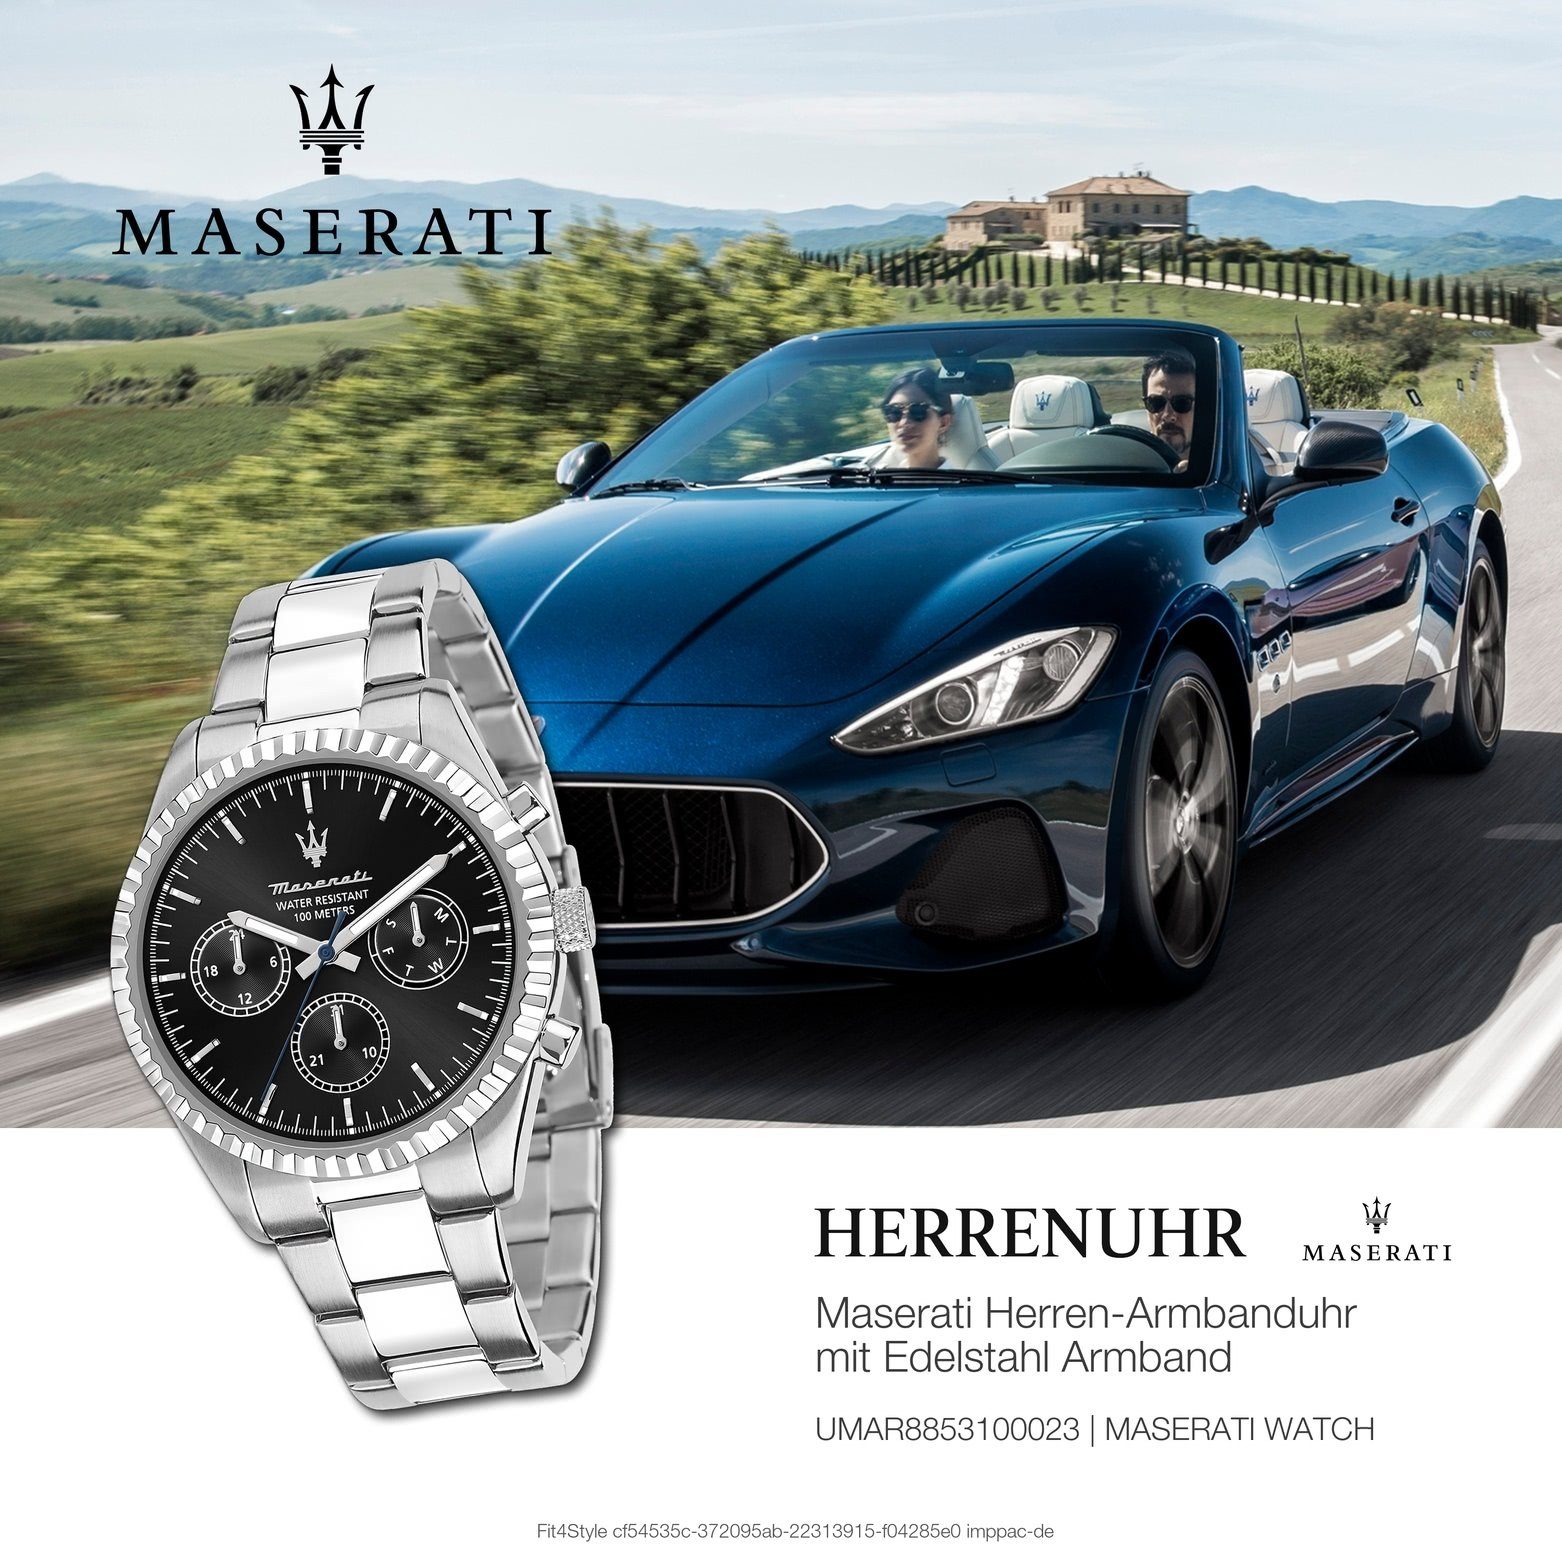 MASERATI Multifunktionsuhr Maserati schwarz, rund, Edelstahlarmband, Italy groß COMPETIZIONE, Made-In 51,5x43mm) Herrenuhr silber Herrenuhr (ca